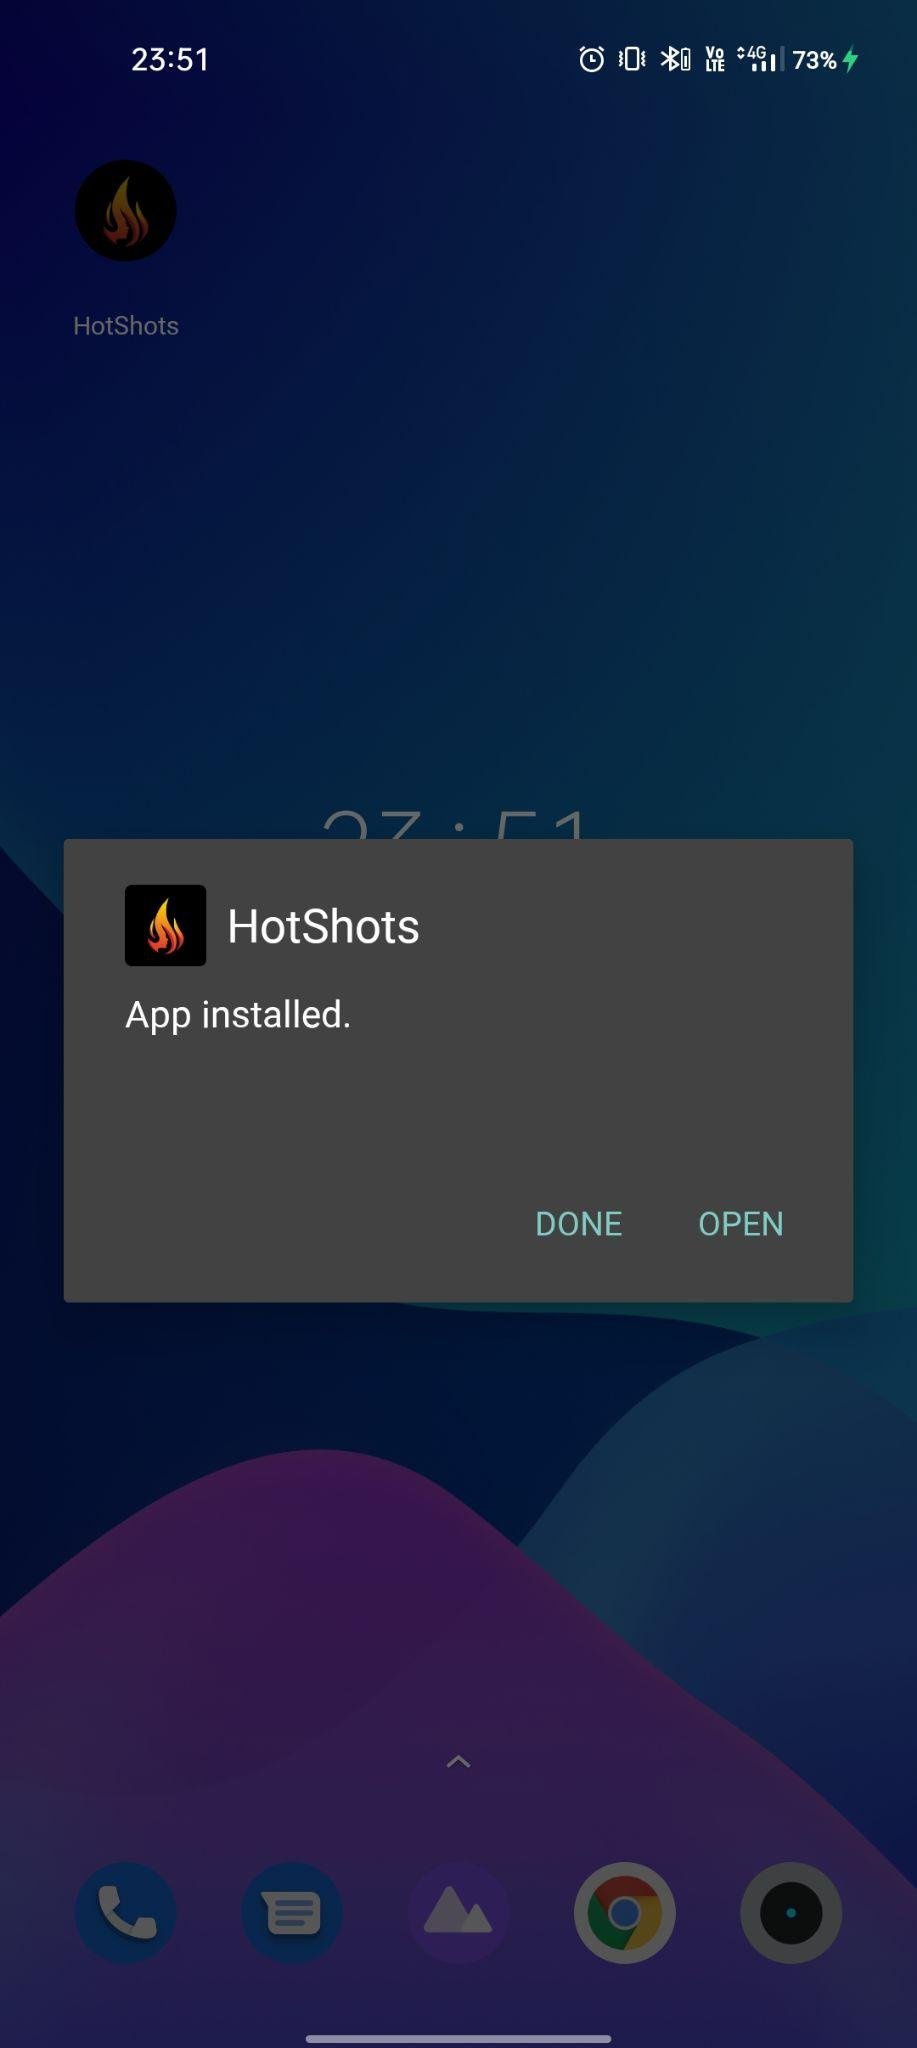 hotshot apk installed